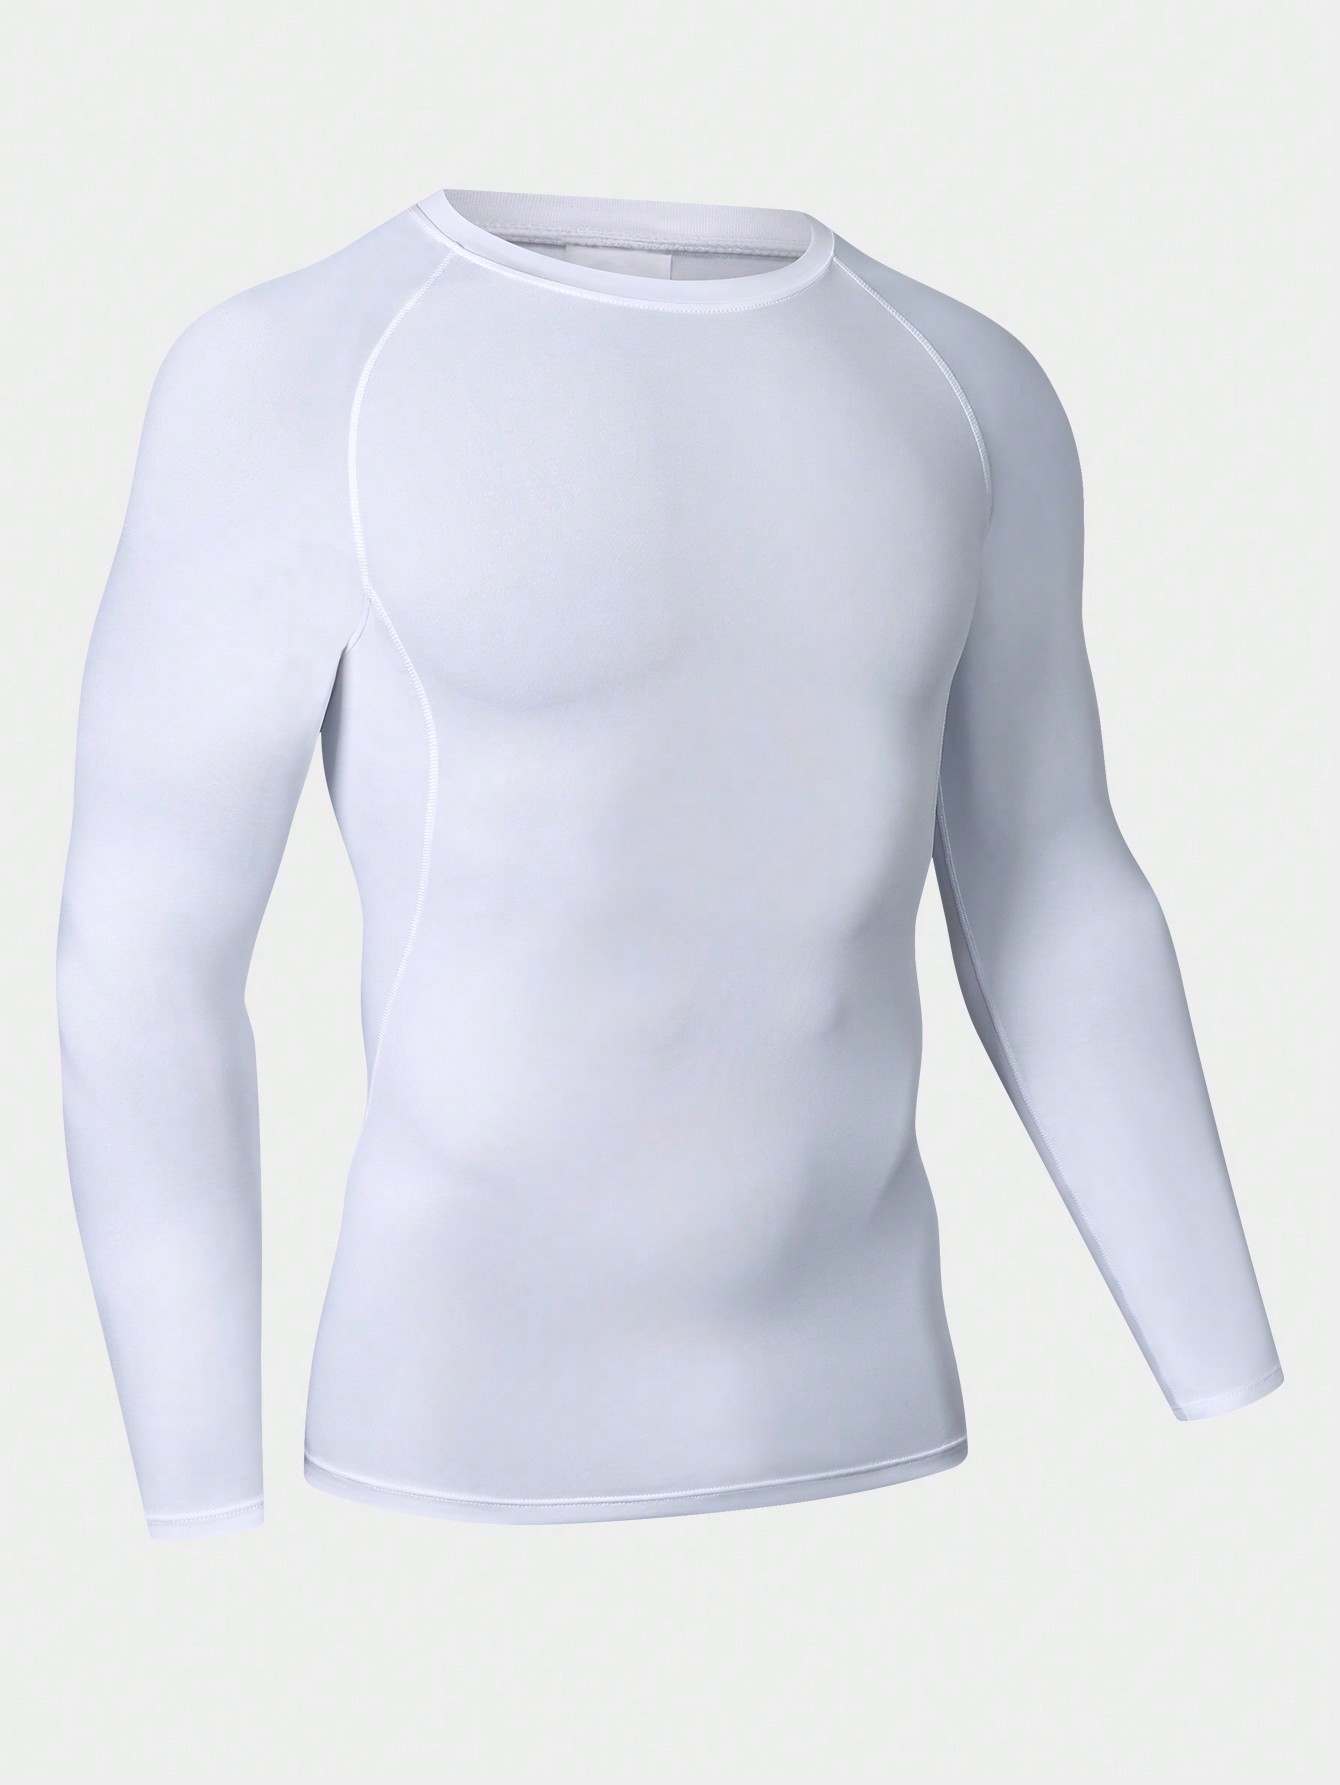 Мужская эластичная компрессионная рубашка для фитнеса с длинными рукавами, белый фото